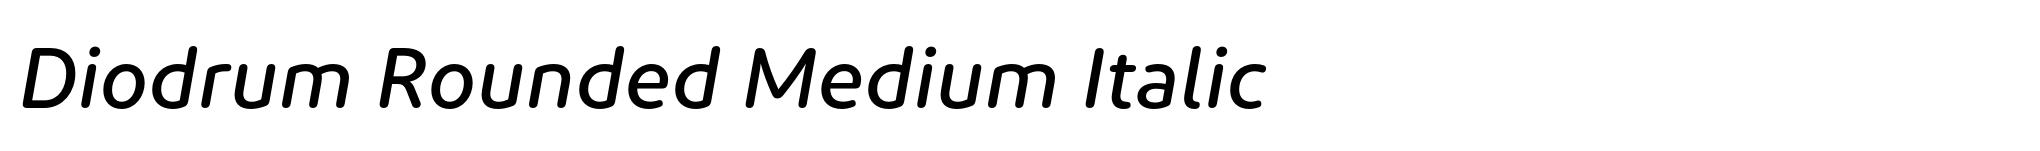 Diodrum Rounded Medium Italic image